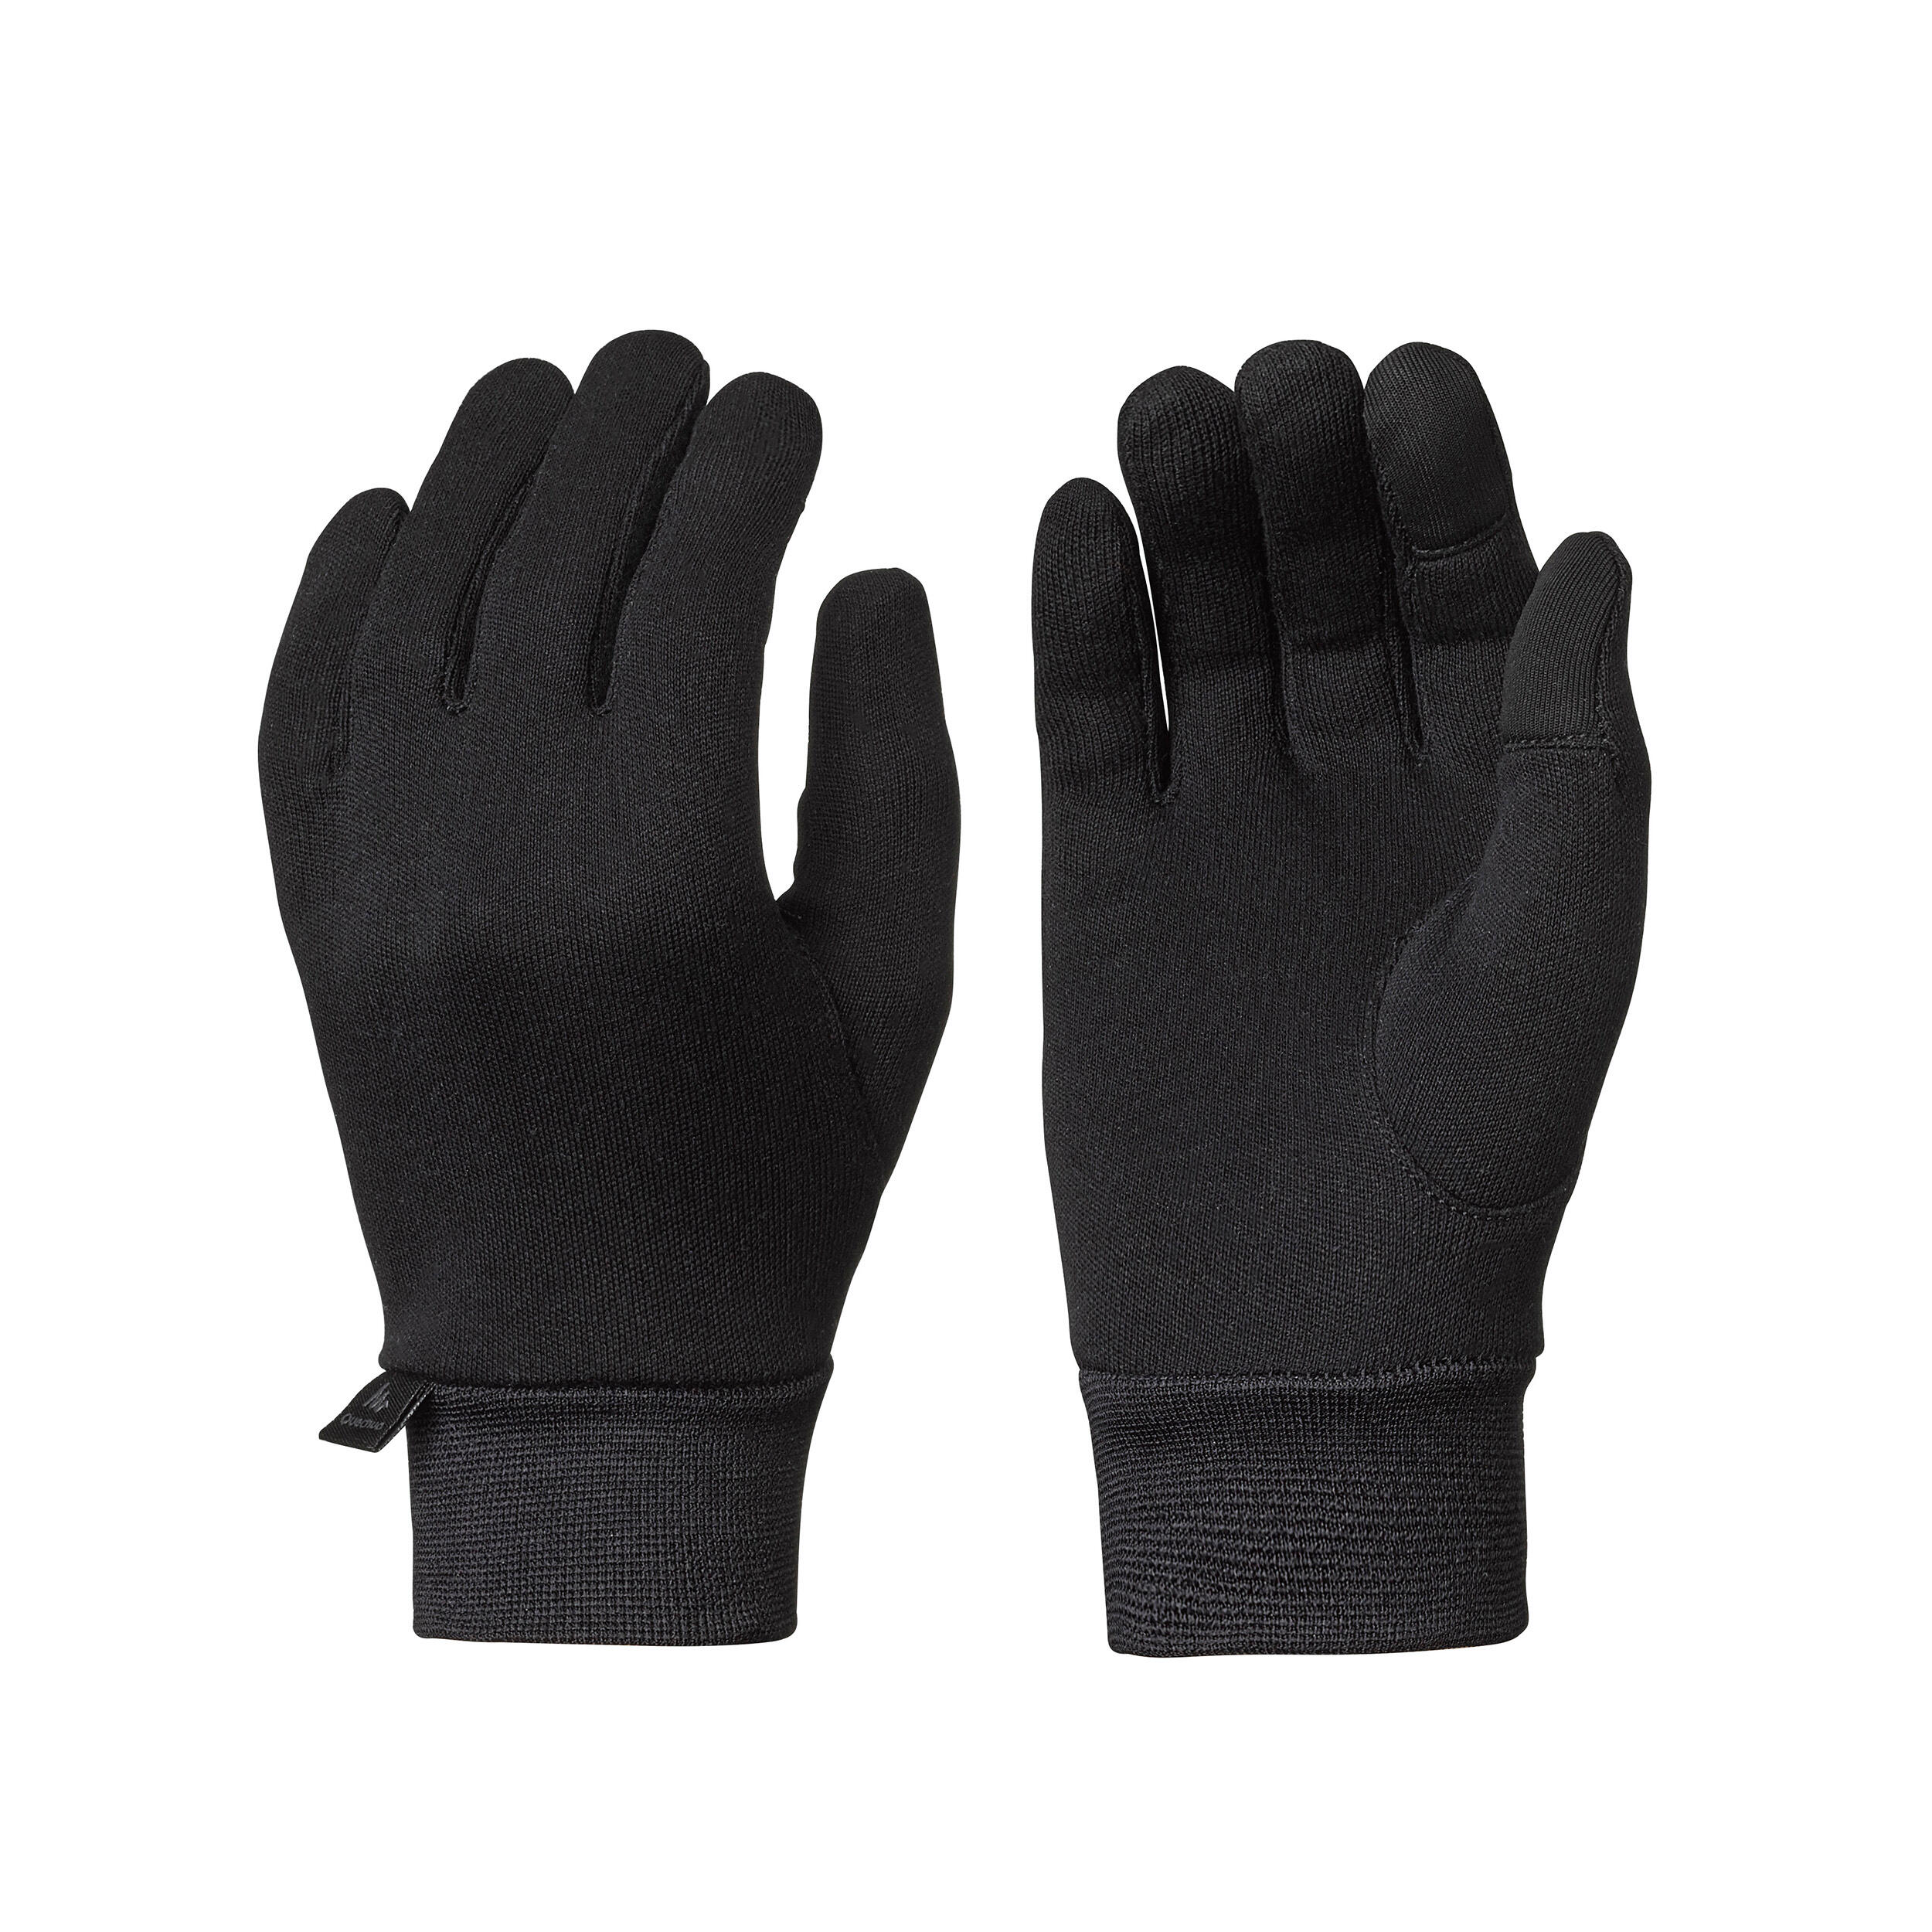 SH 500 Hiking Touchscreen-Compatible Silk Liner Gloves - Kids - QUECHUA